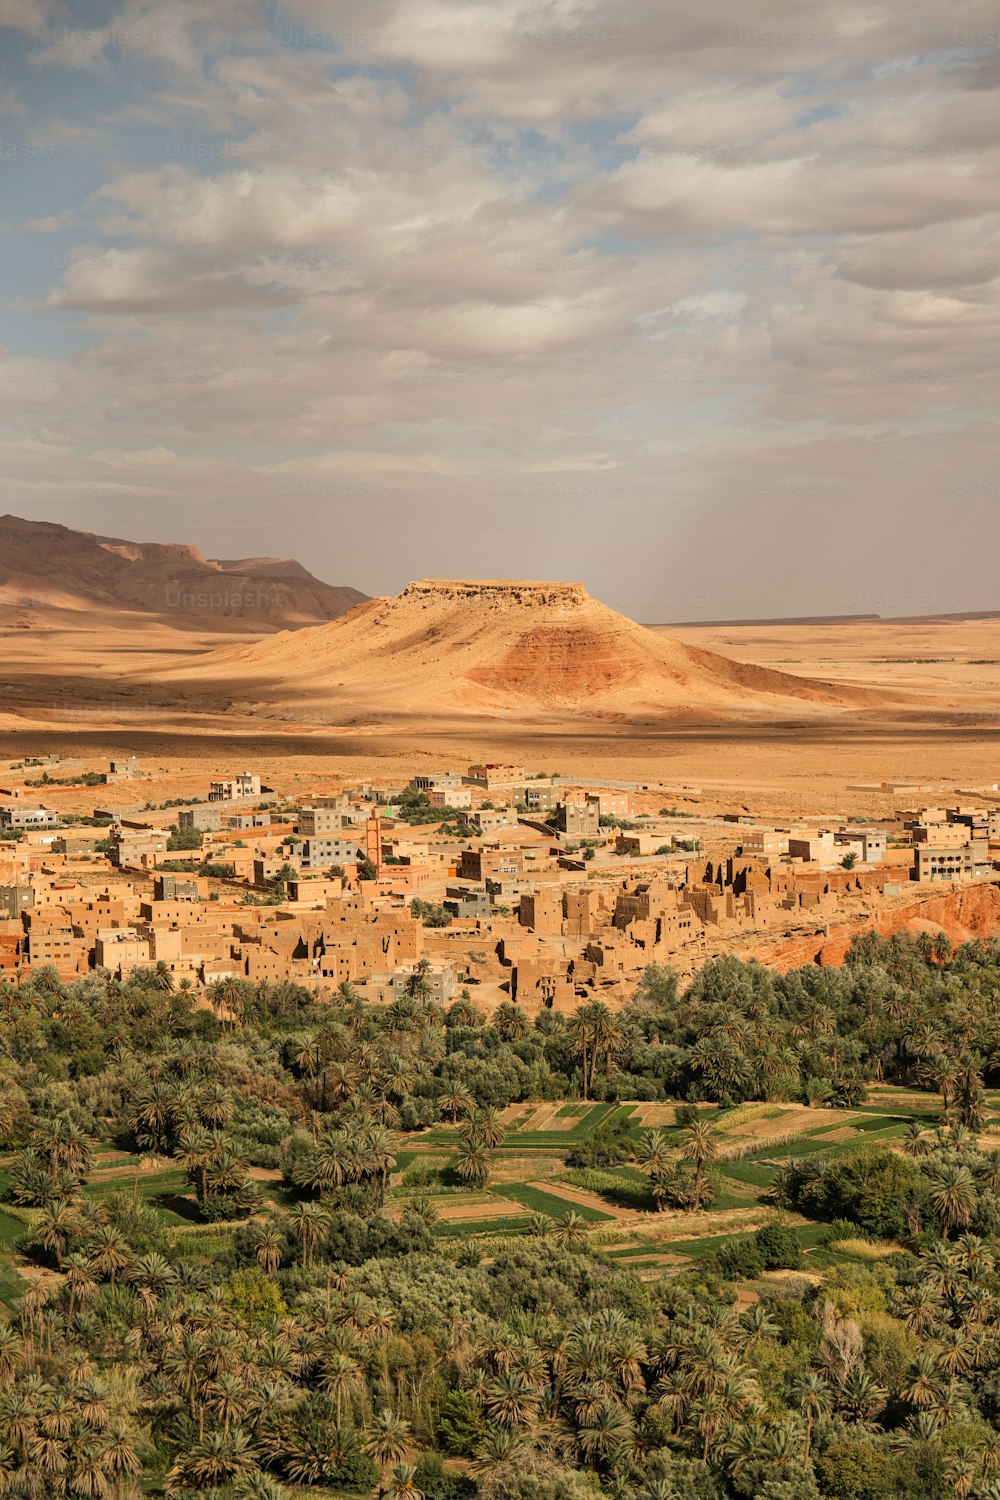 Un pequeño pueblo en medio de un desierto